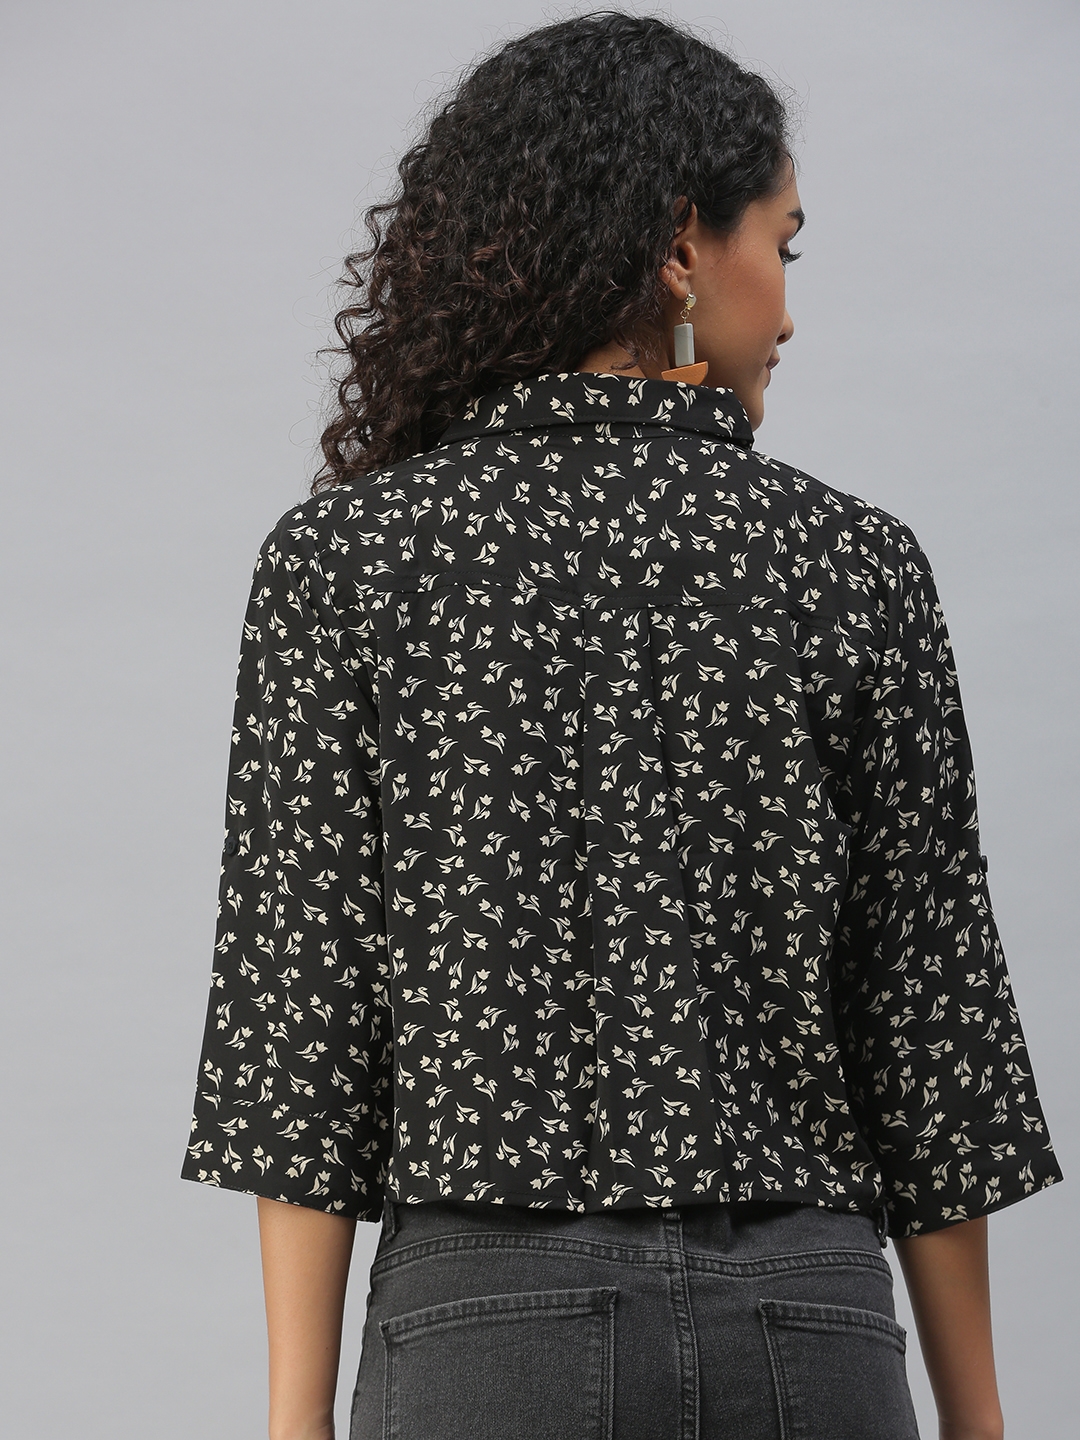 Showoff | SHOWOFF Women's Regular Fit Roll-Up Sleeves Black Floral Shirt 3